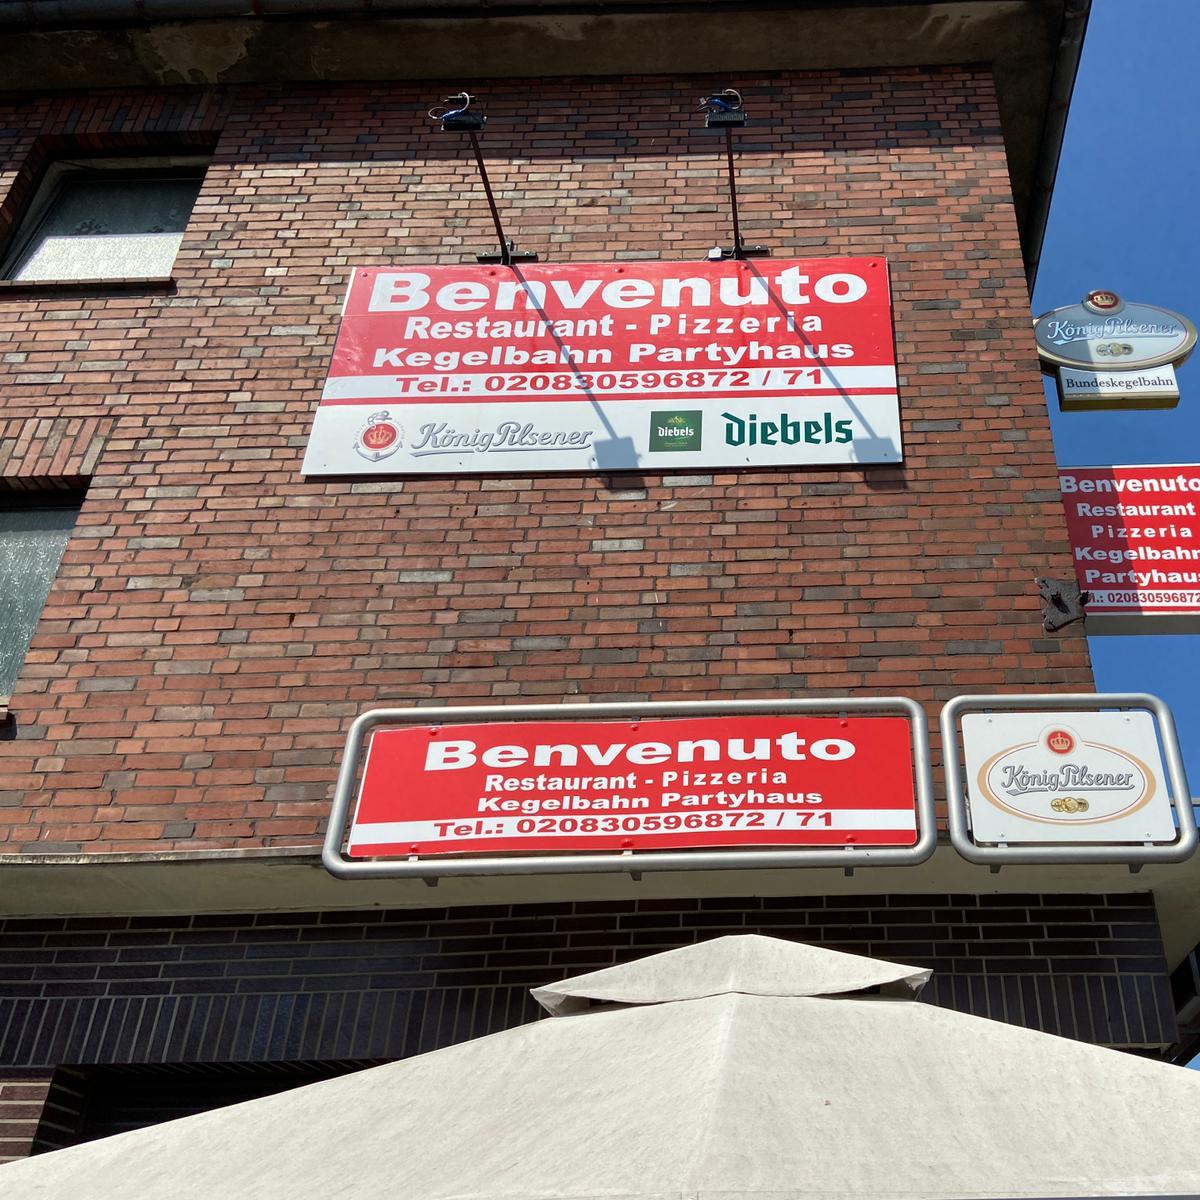 Restaurant "Benvenuto" in Oberhausen